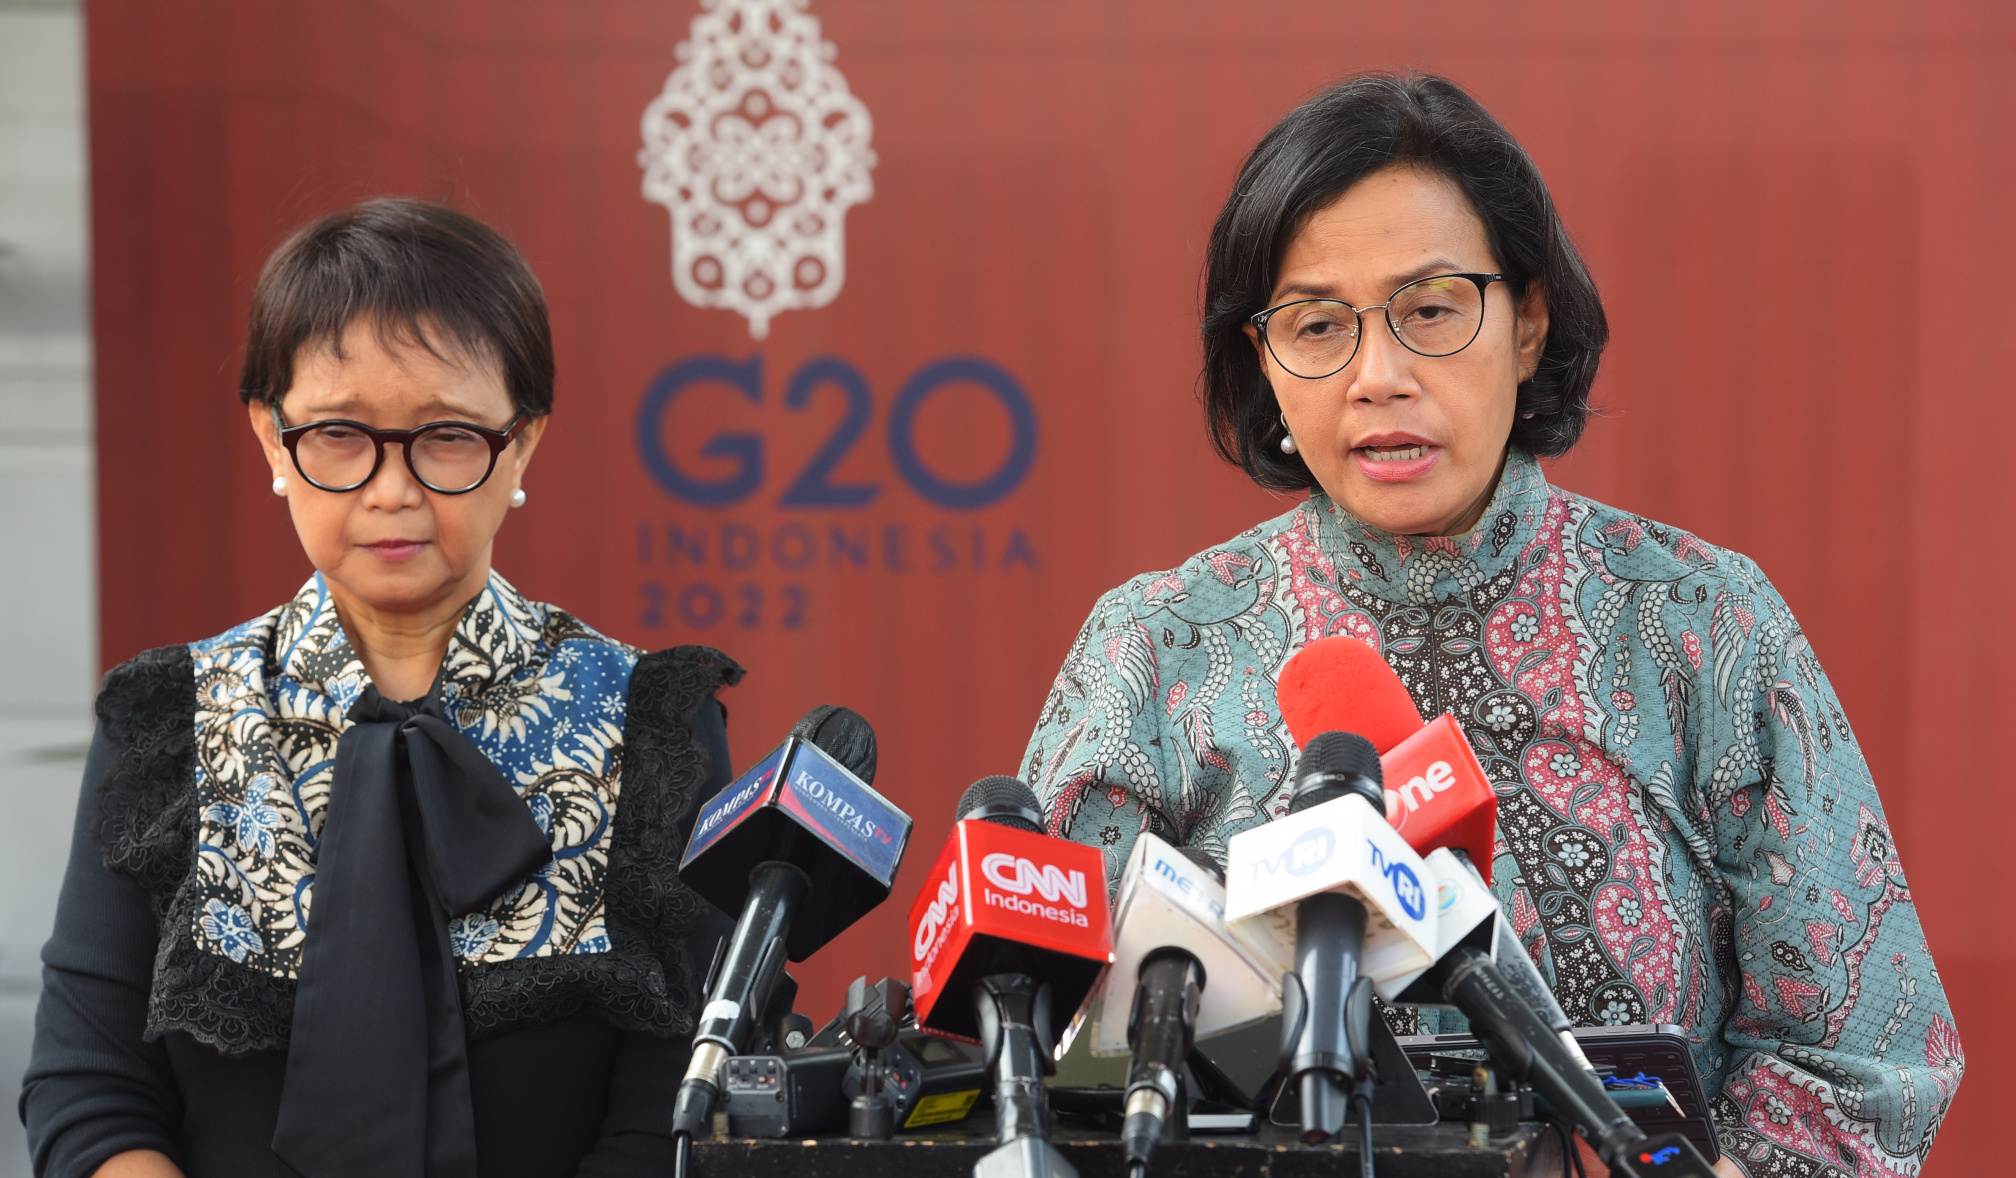 'Gawe Besar' Selesai, Menkeu Beberkan Tindak Lanjut Tiga Agenda Prioritas Presidensi G20 Indonesia